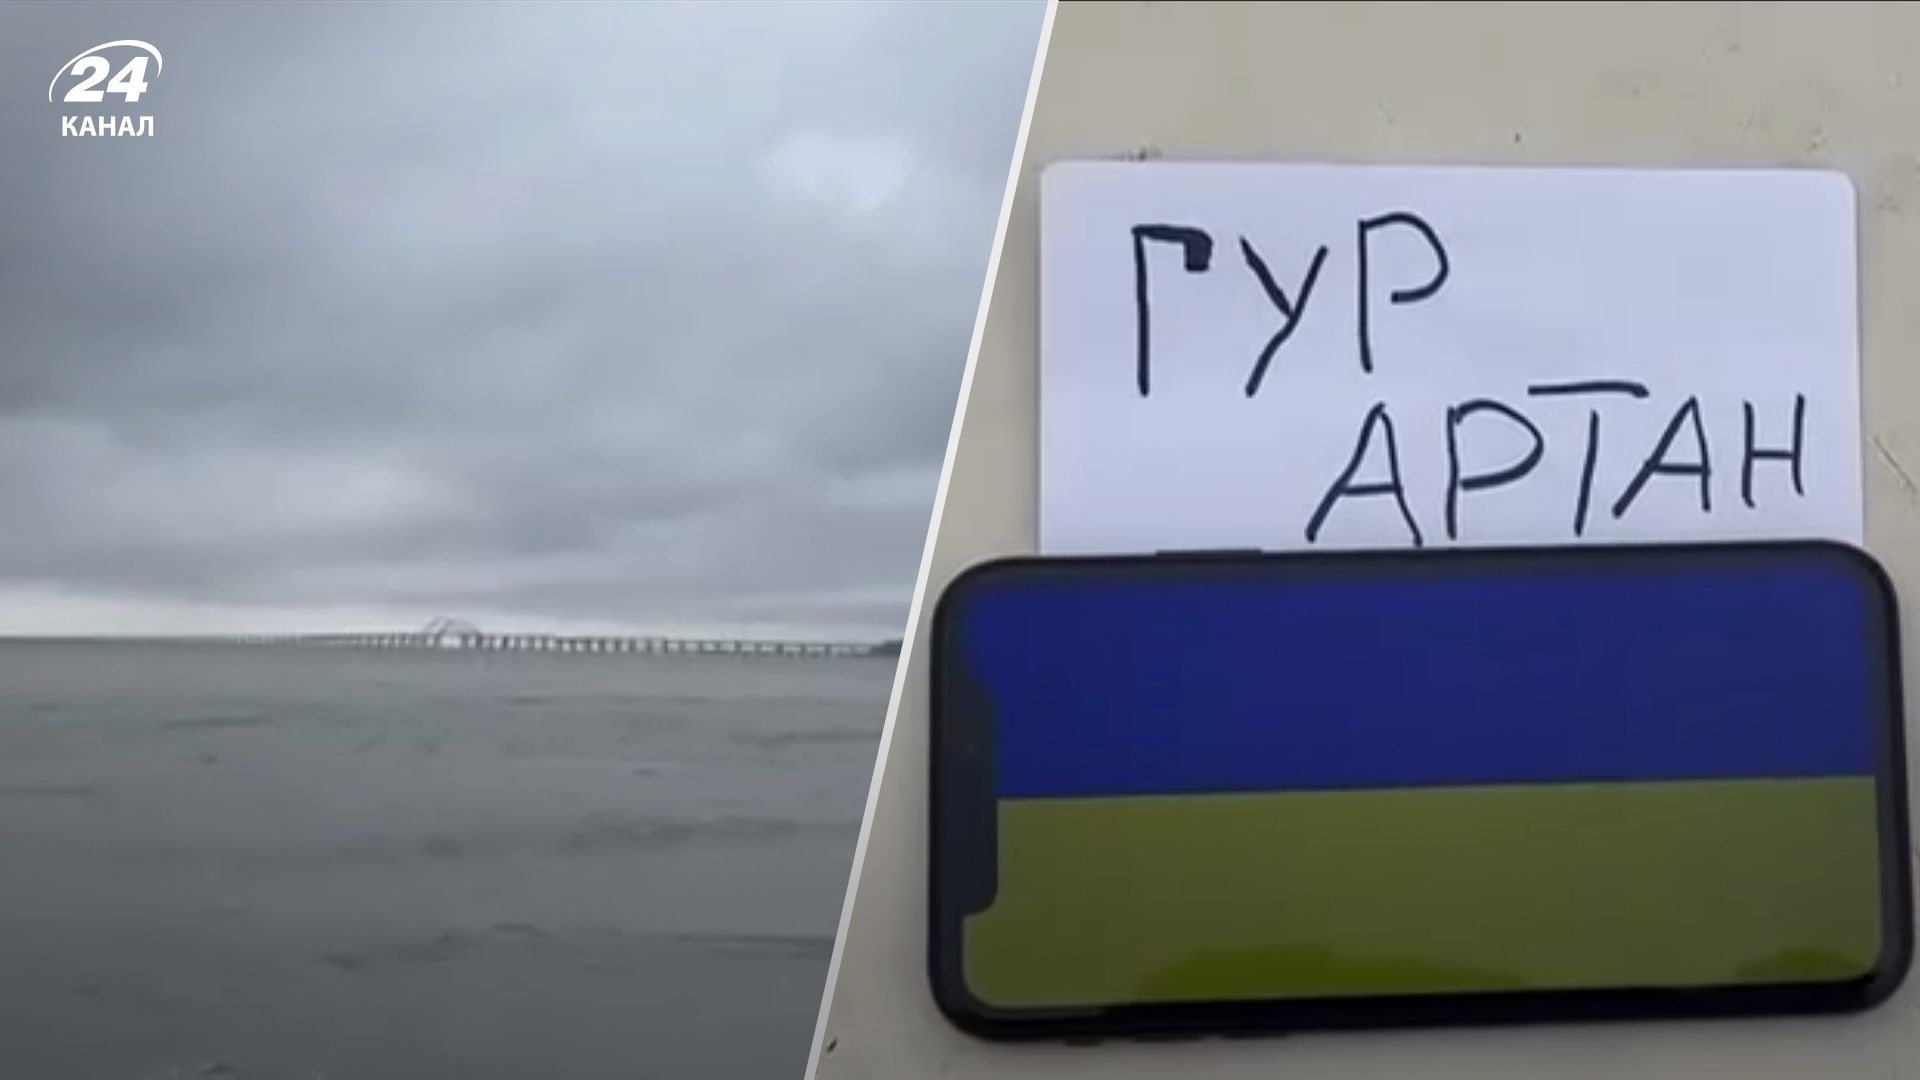 ГУР МО Артан передає привіт окупантам біля Кримського мосту - 24 Канал